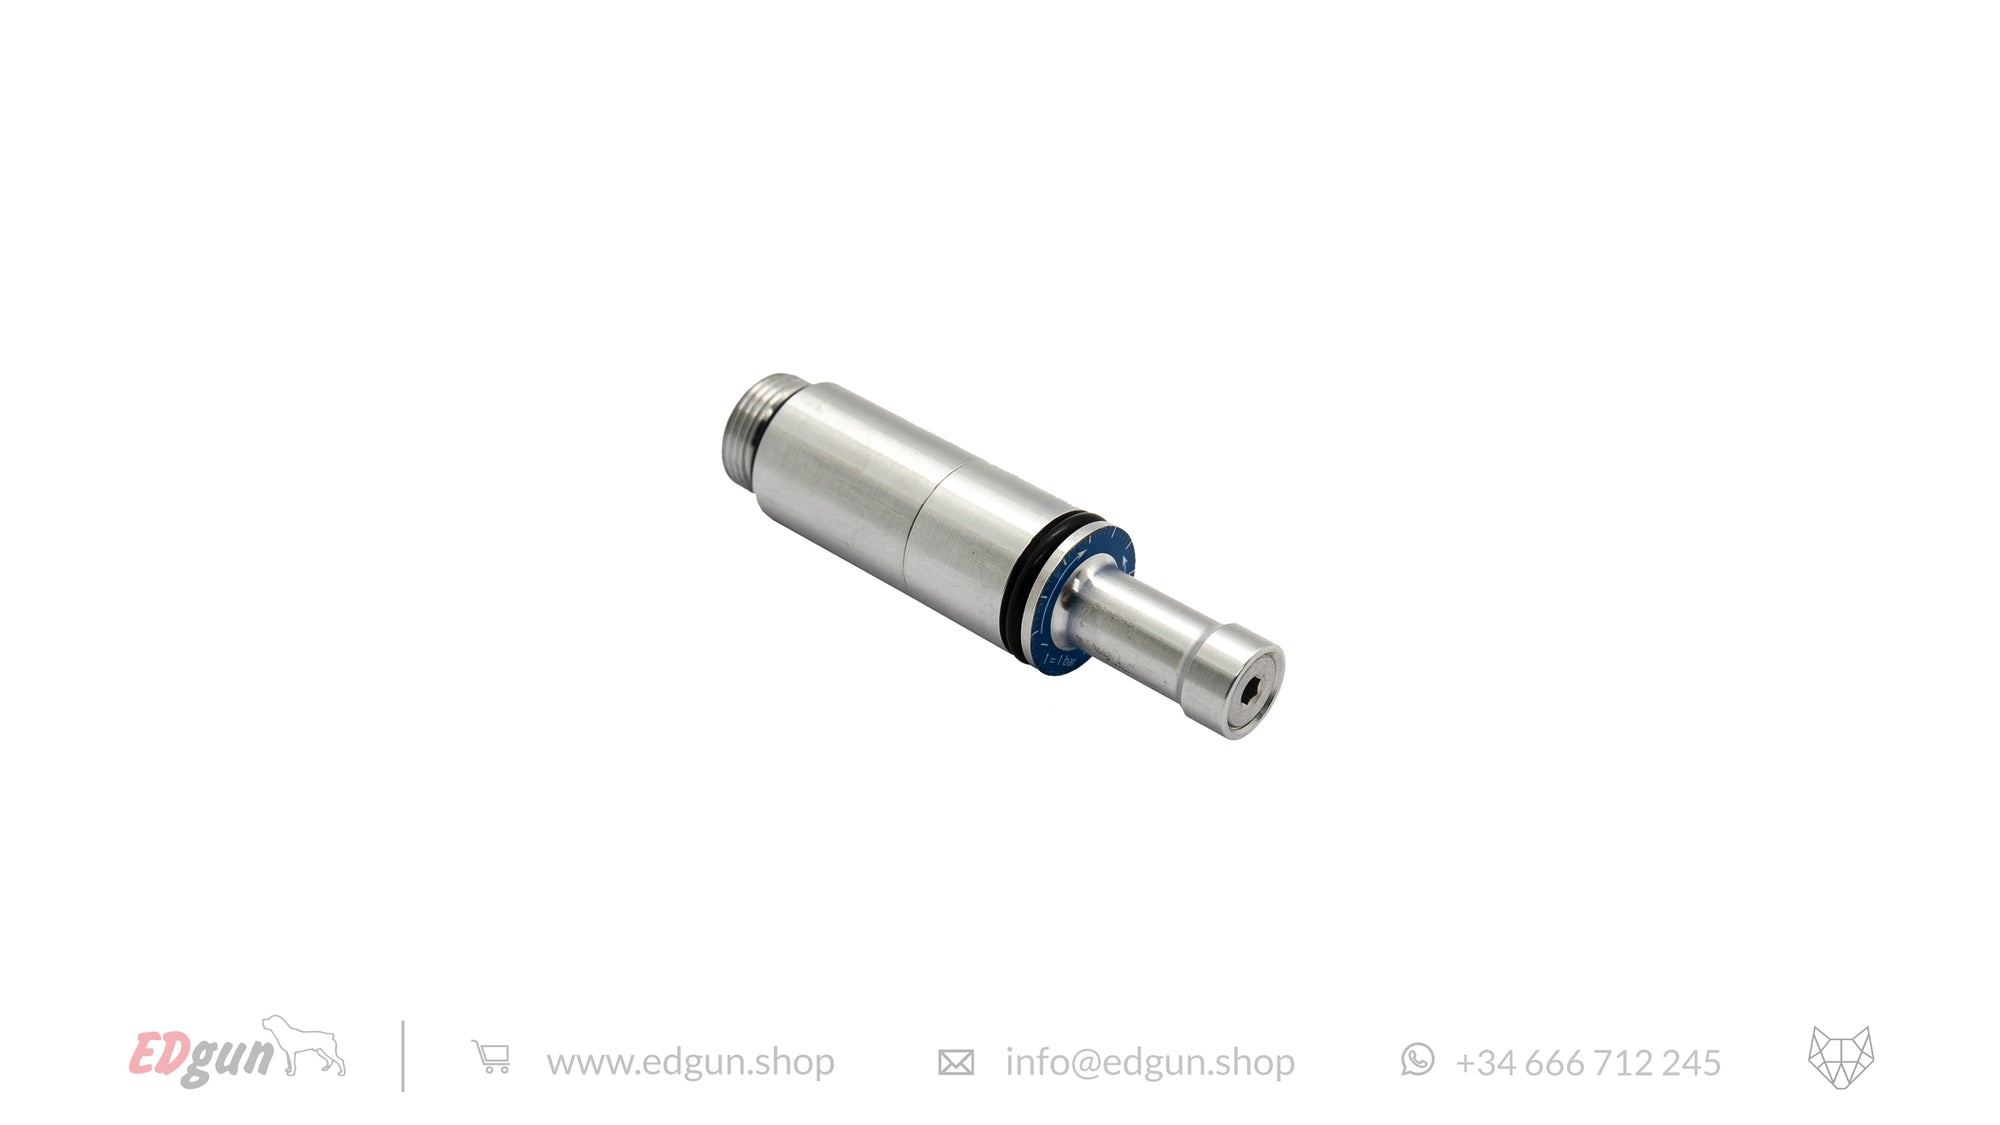 Nuevo Regulador Compacto EDgun para Leshiy Clásica - KL000100